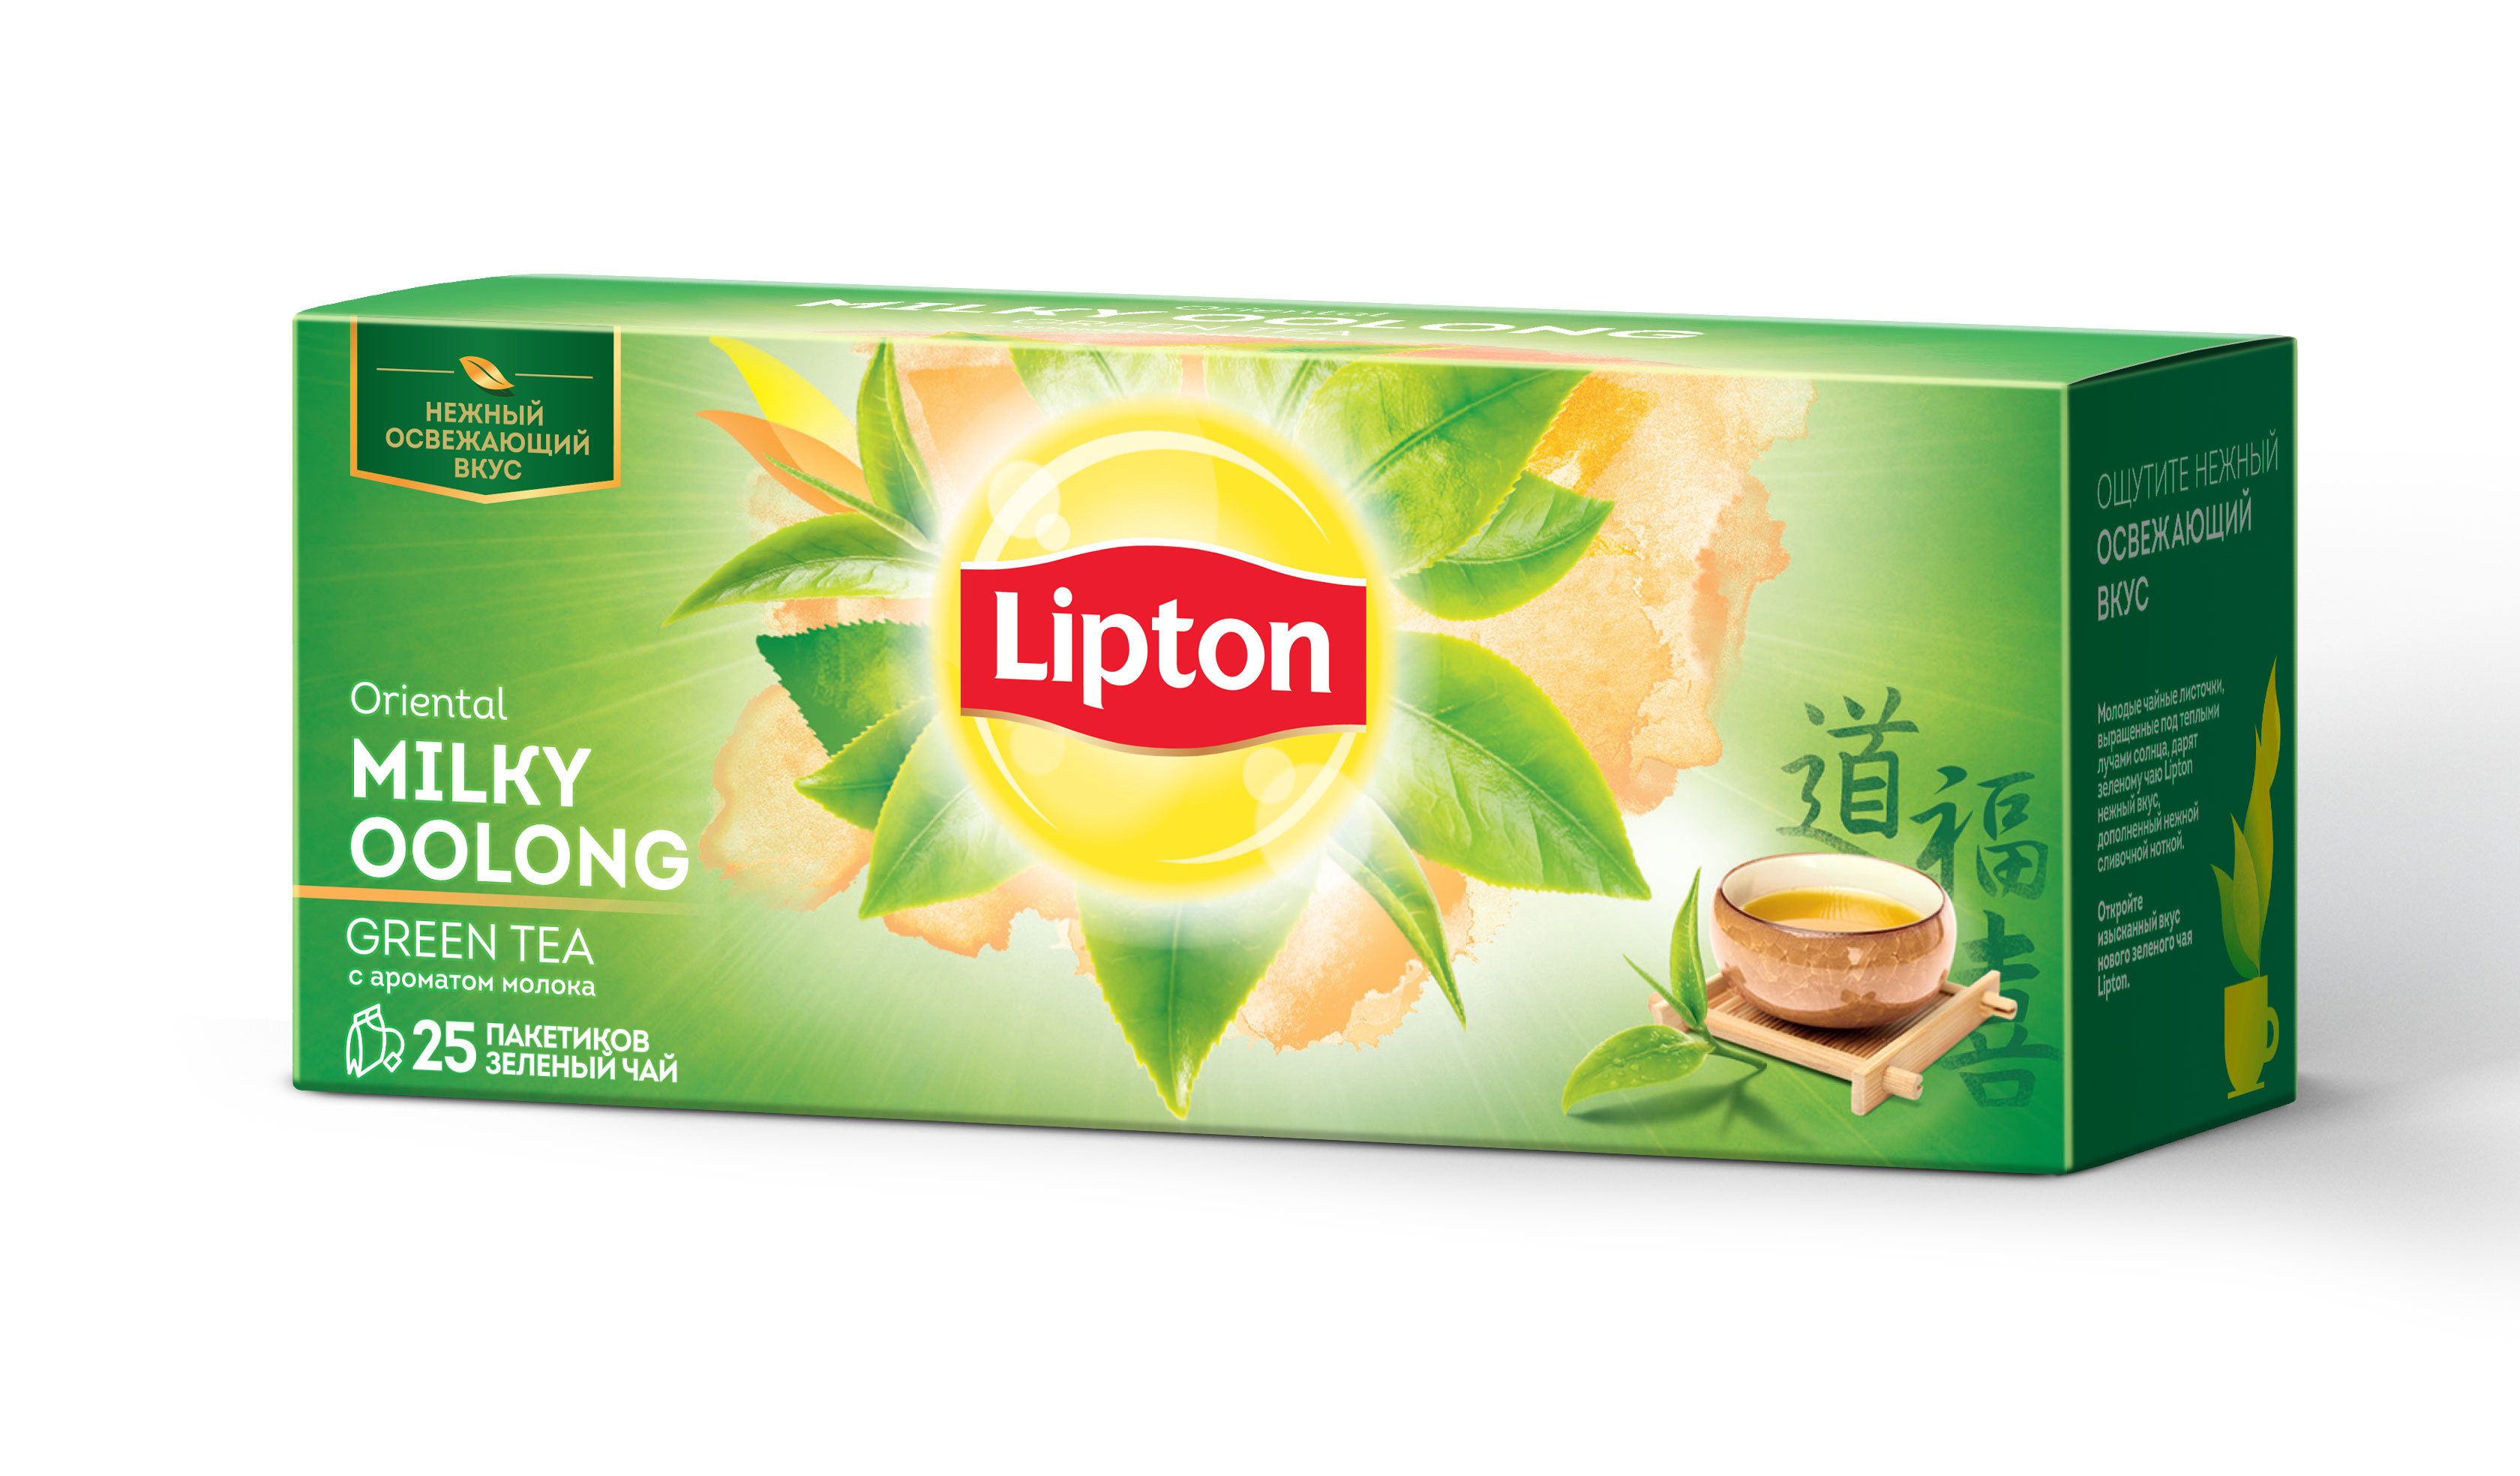 Lipton Oriental Milky